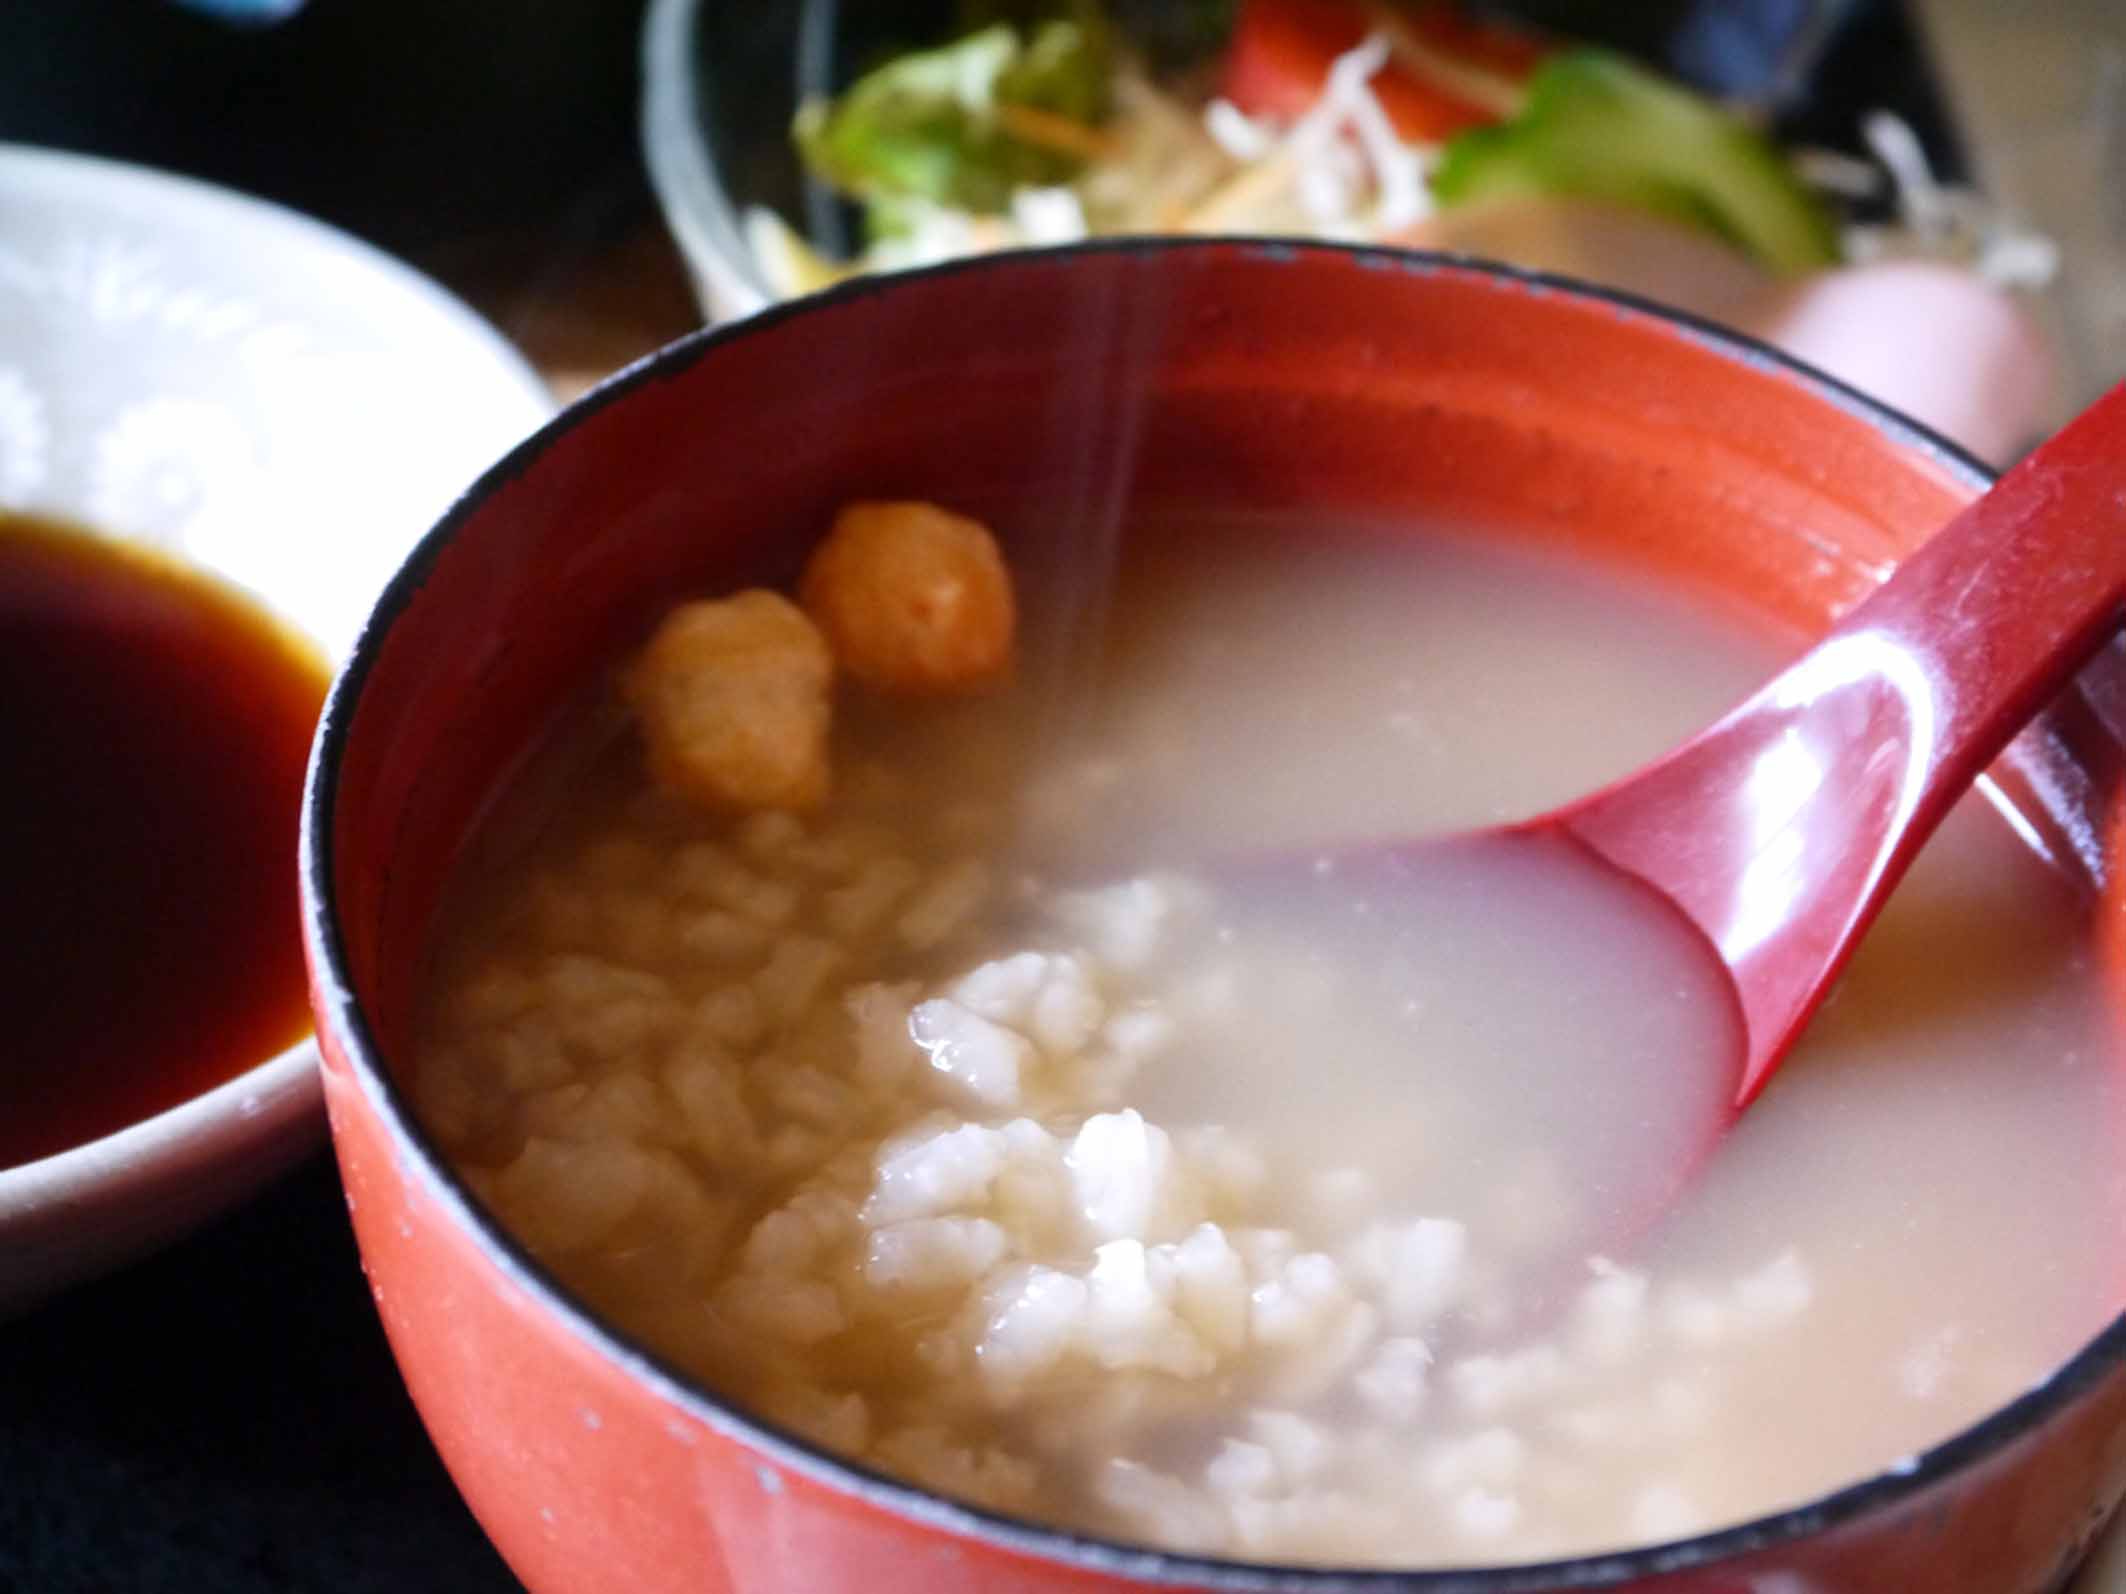 【和朝食】ほうじ茶香る奈良名物の茶粥や、奈良漬をお出し致します。